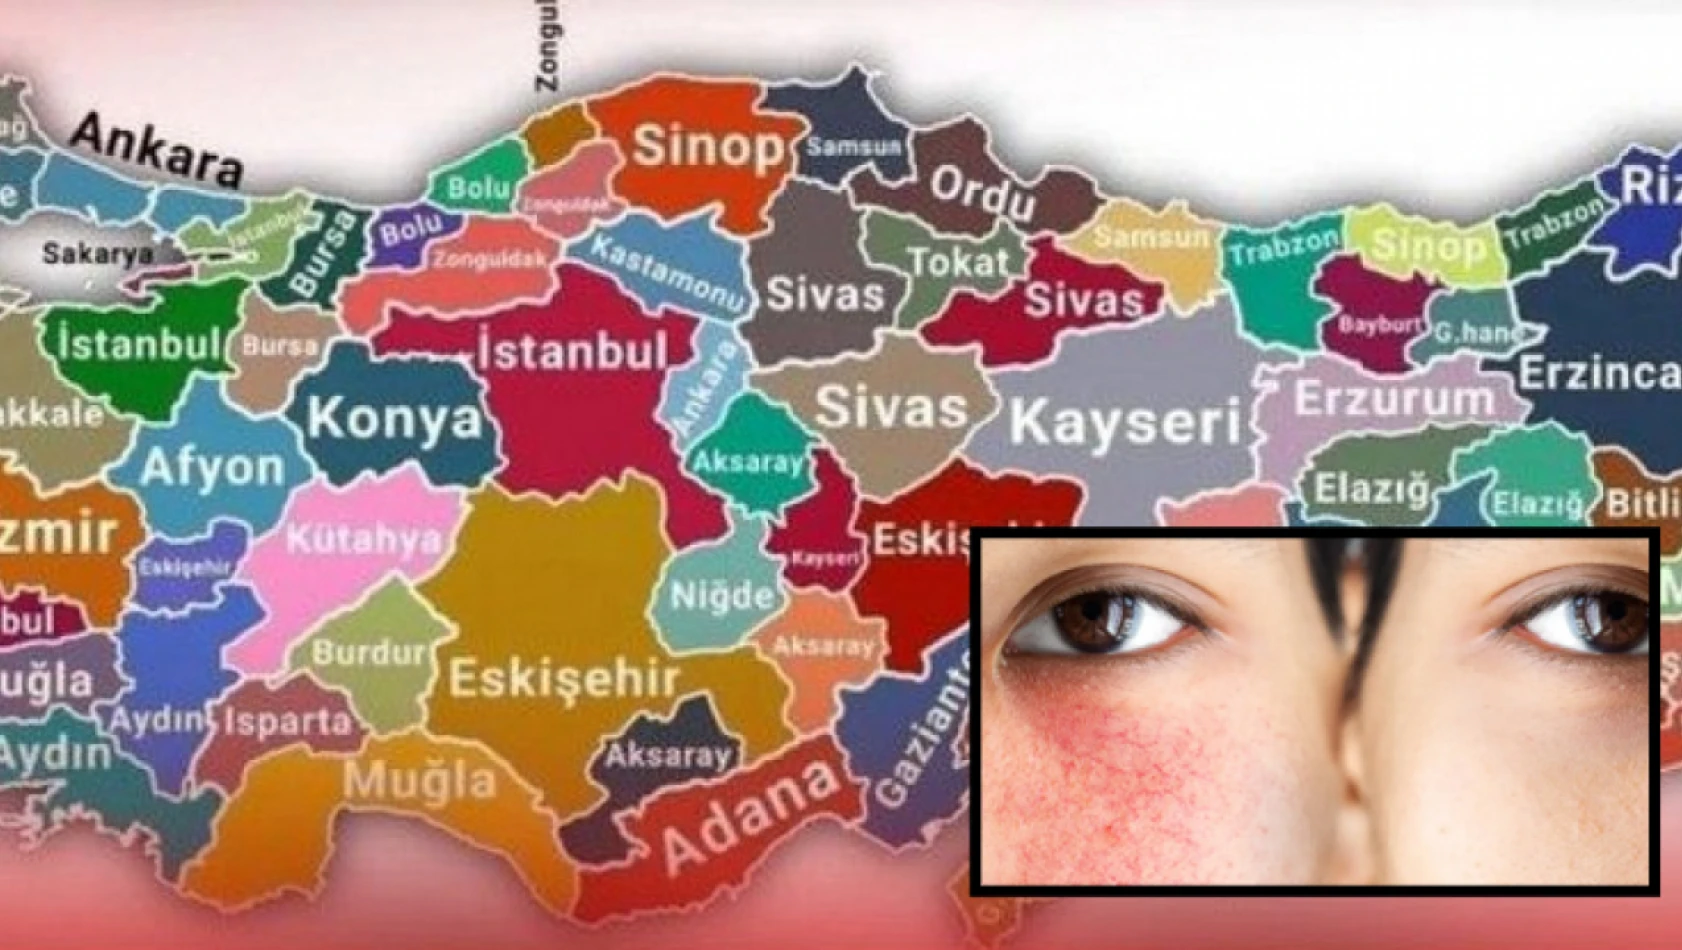 Kayseri, Bolu, Nevşehir, Niğde, Karabük, Çankırı dikkat - Cildiniz zarar görebilir!